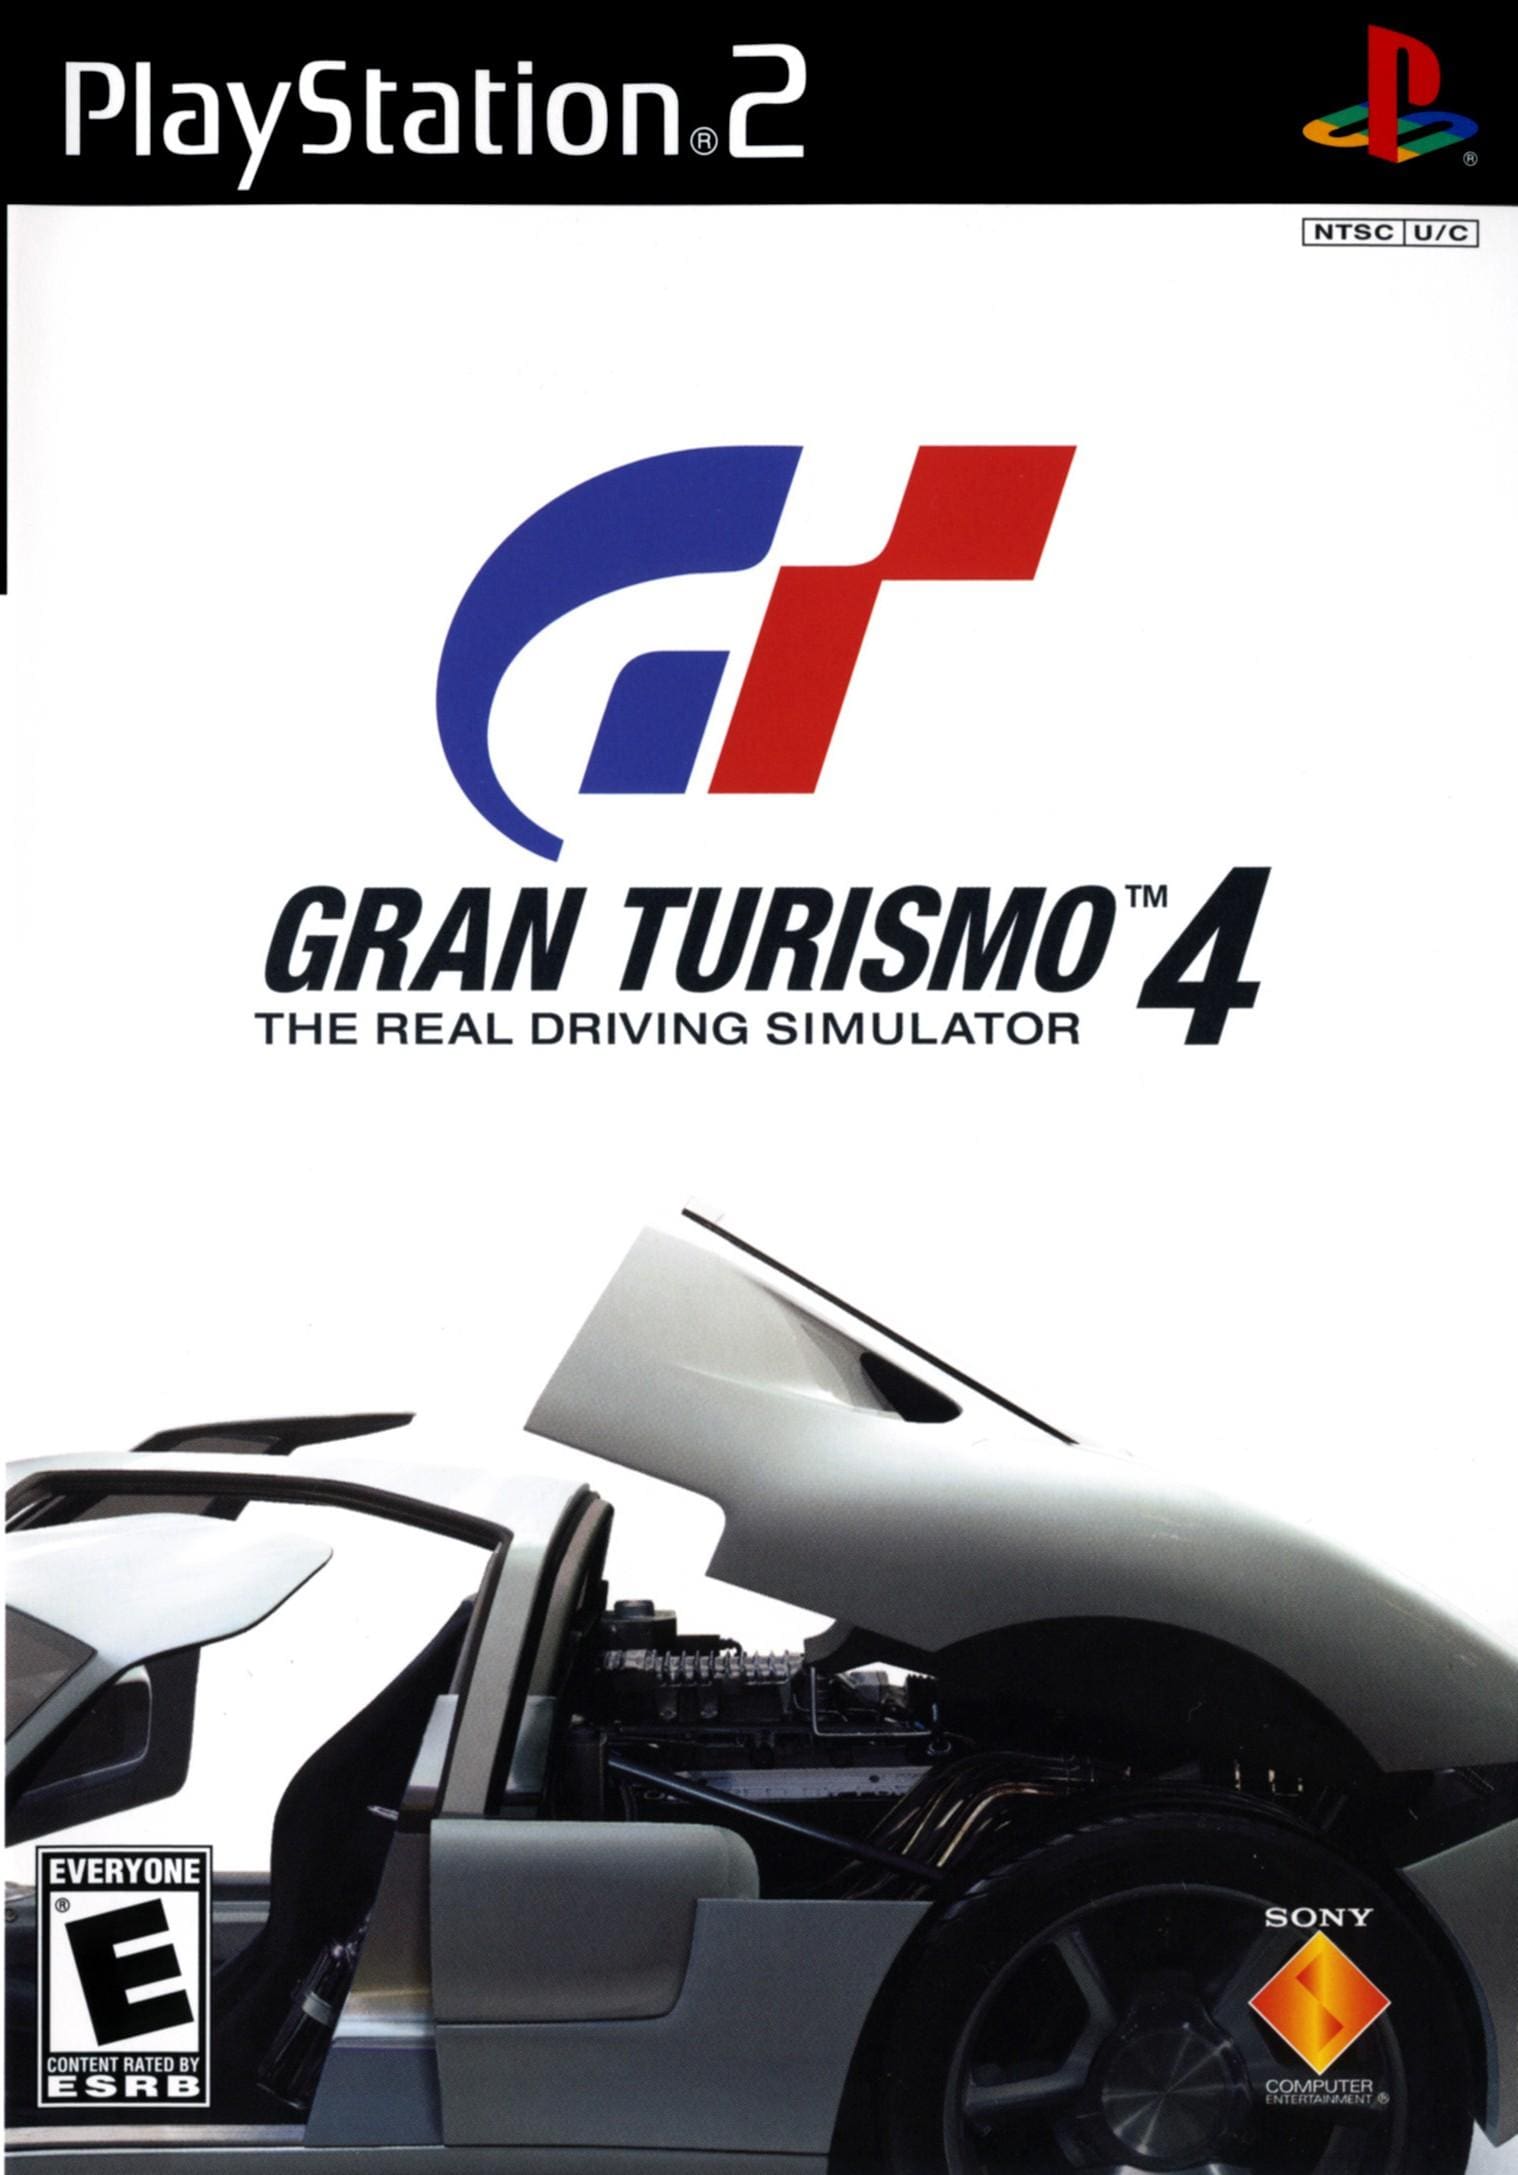 Revive as memórias clássicas: Gran Turismo 4 - Sony Playstation 2 (2005) Anos 2000, Jogos, Nostalgia, Retro Gaming, Reviews